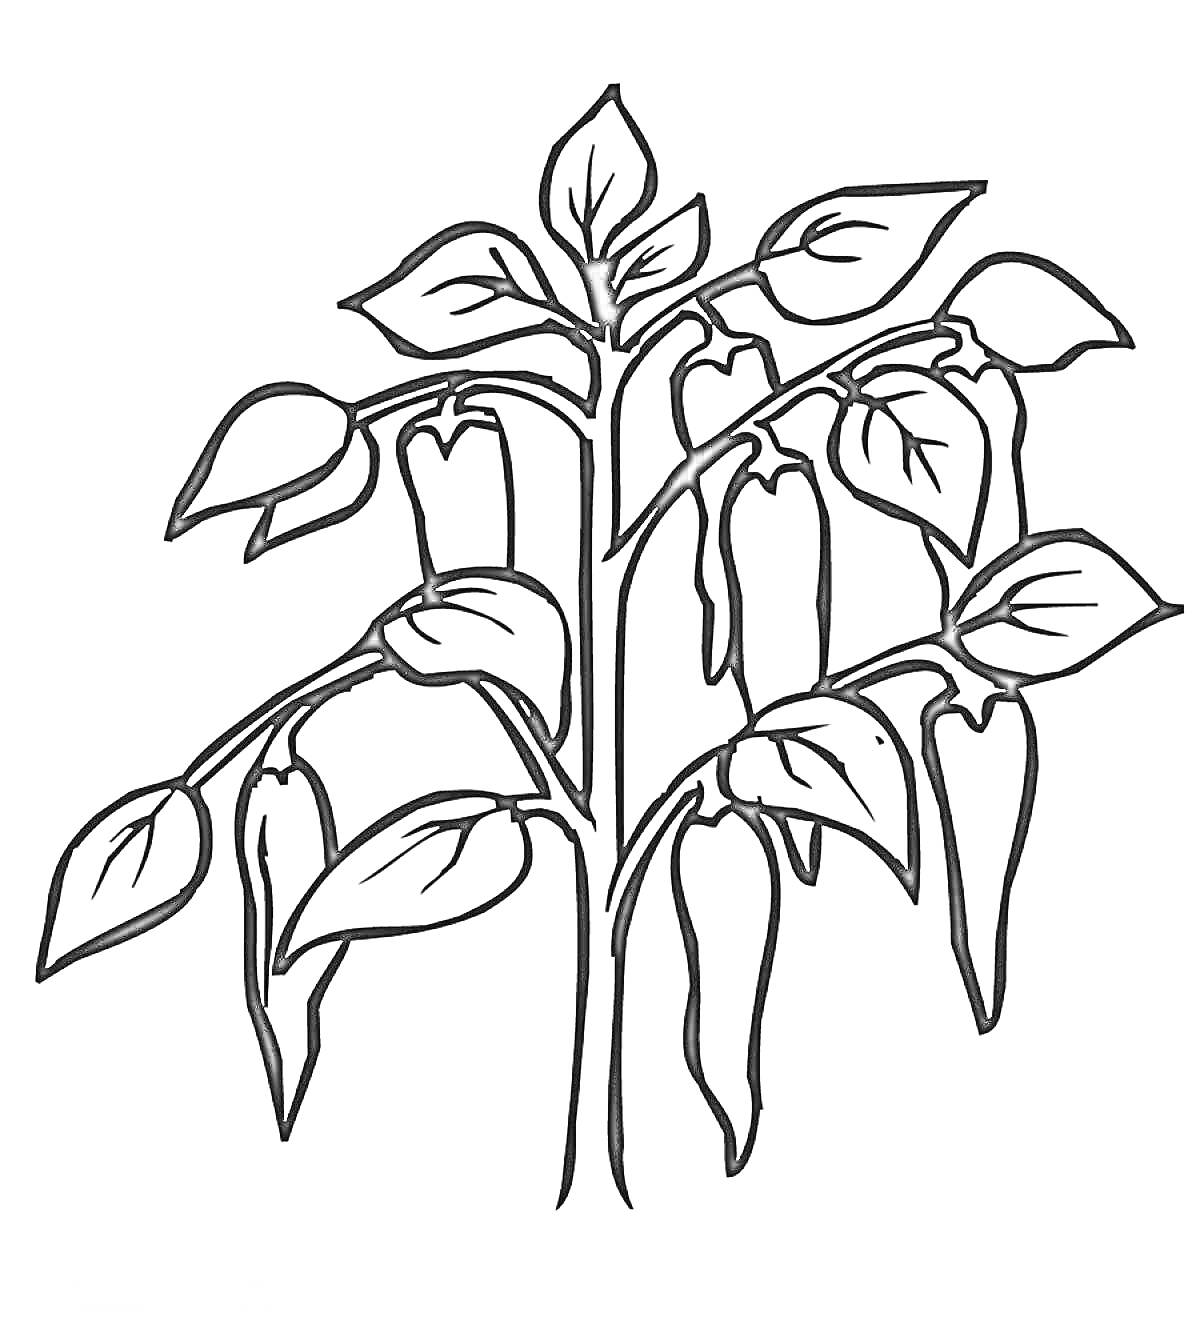 Раскраска Перец на ветке с листьями